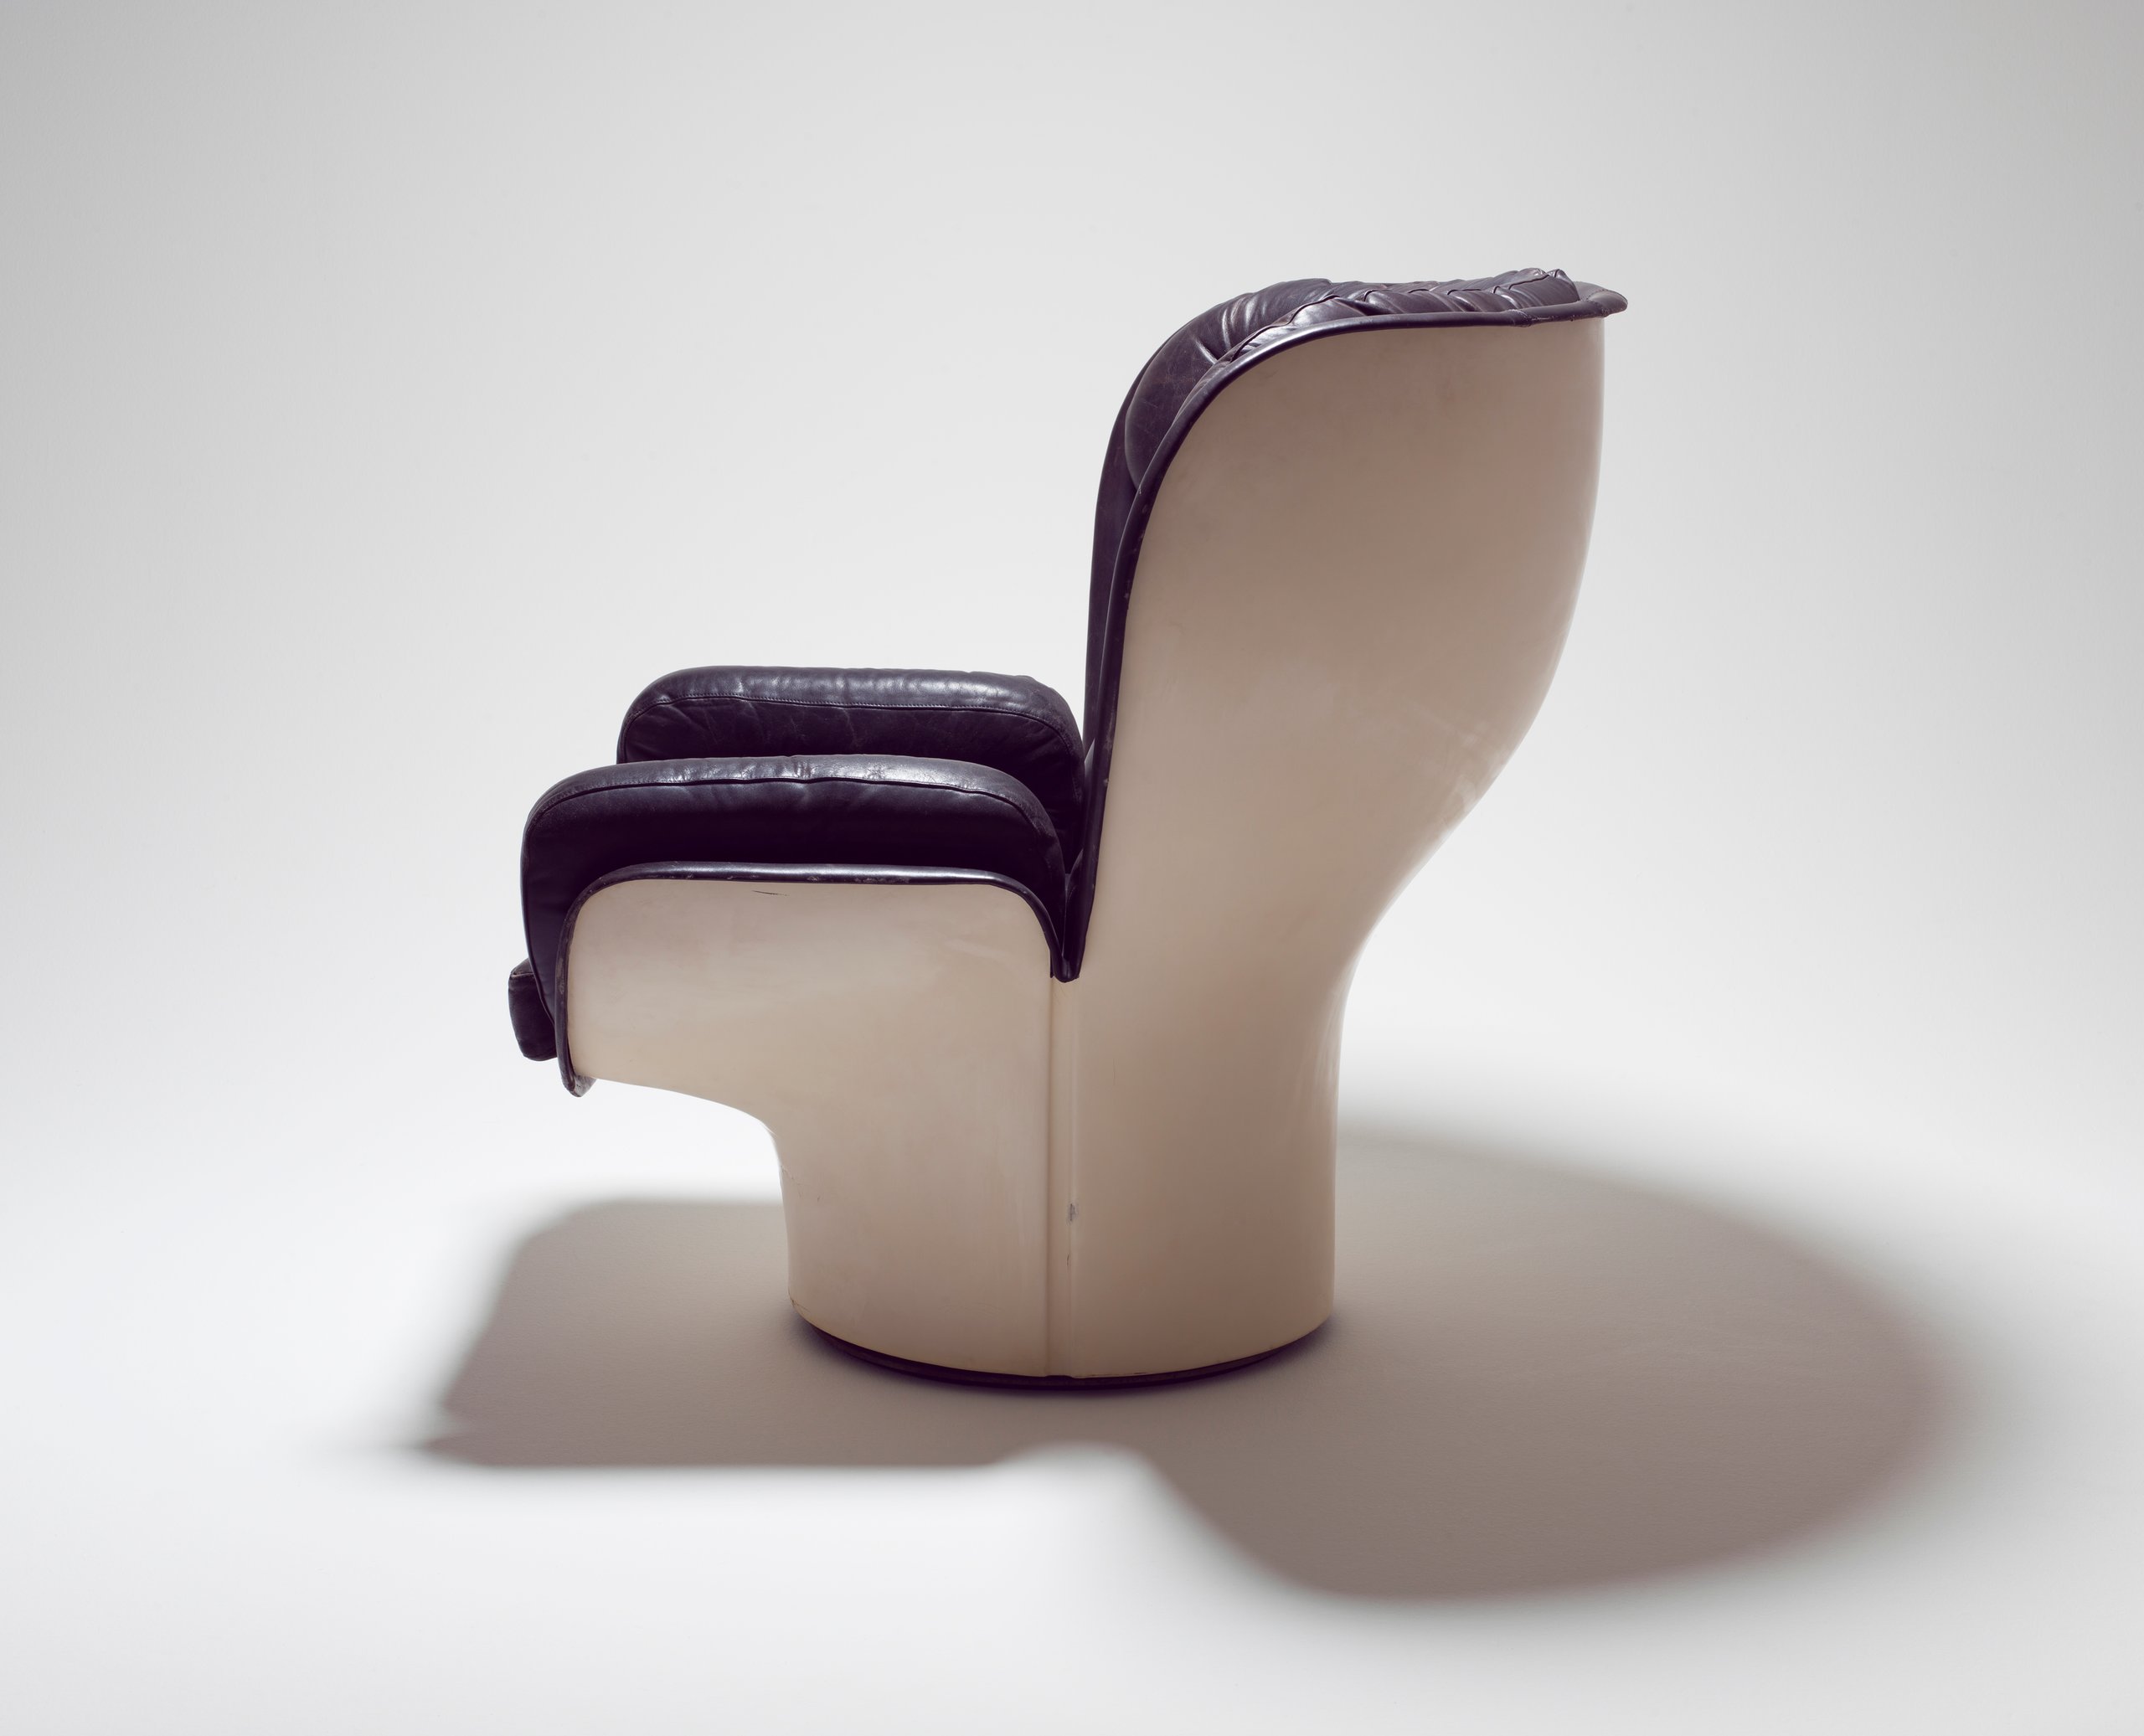 'Elda 1005' armchair by Joe Colombo